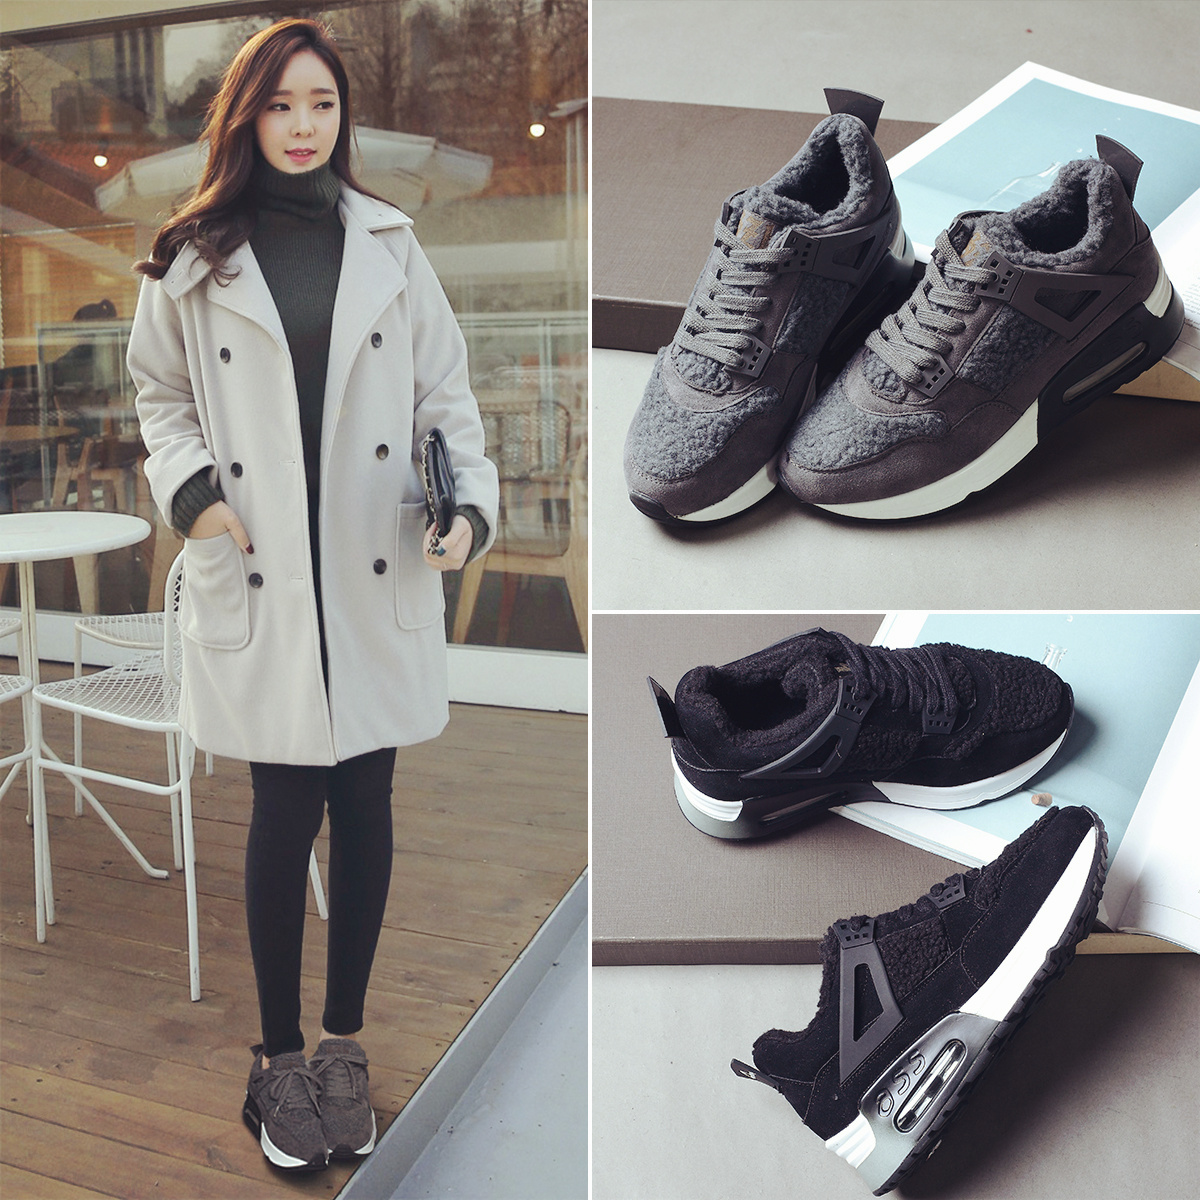 灰色运动鞋女韩版冬季加厚加绒羊羔毛休闲鞋冬鞋气垫跑步鞋棉鞋潮